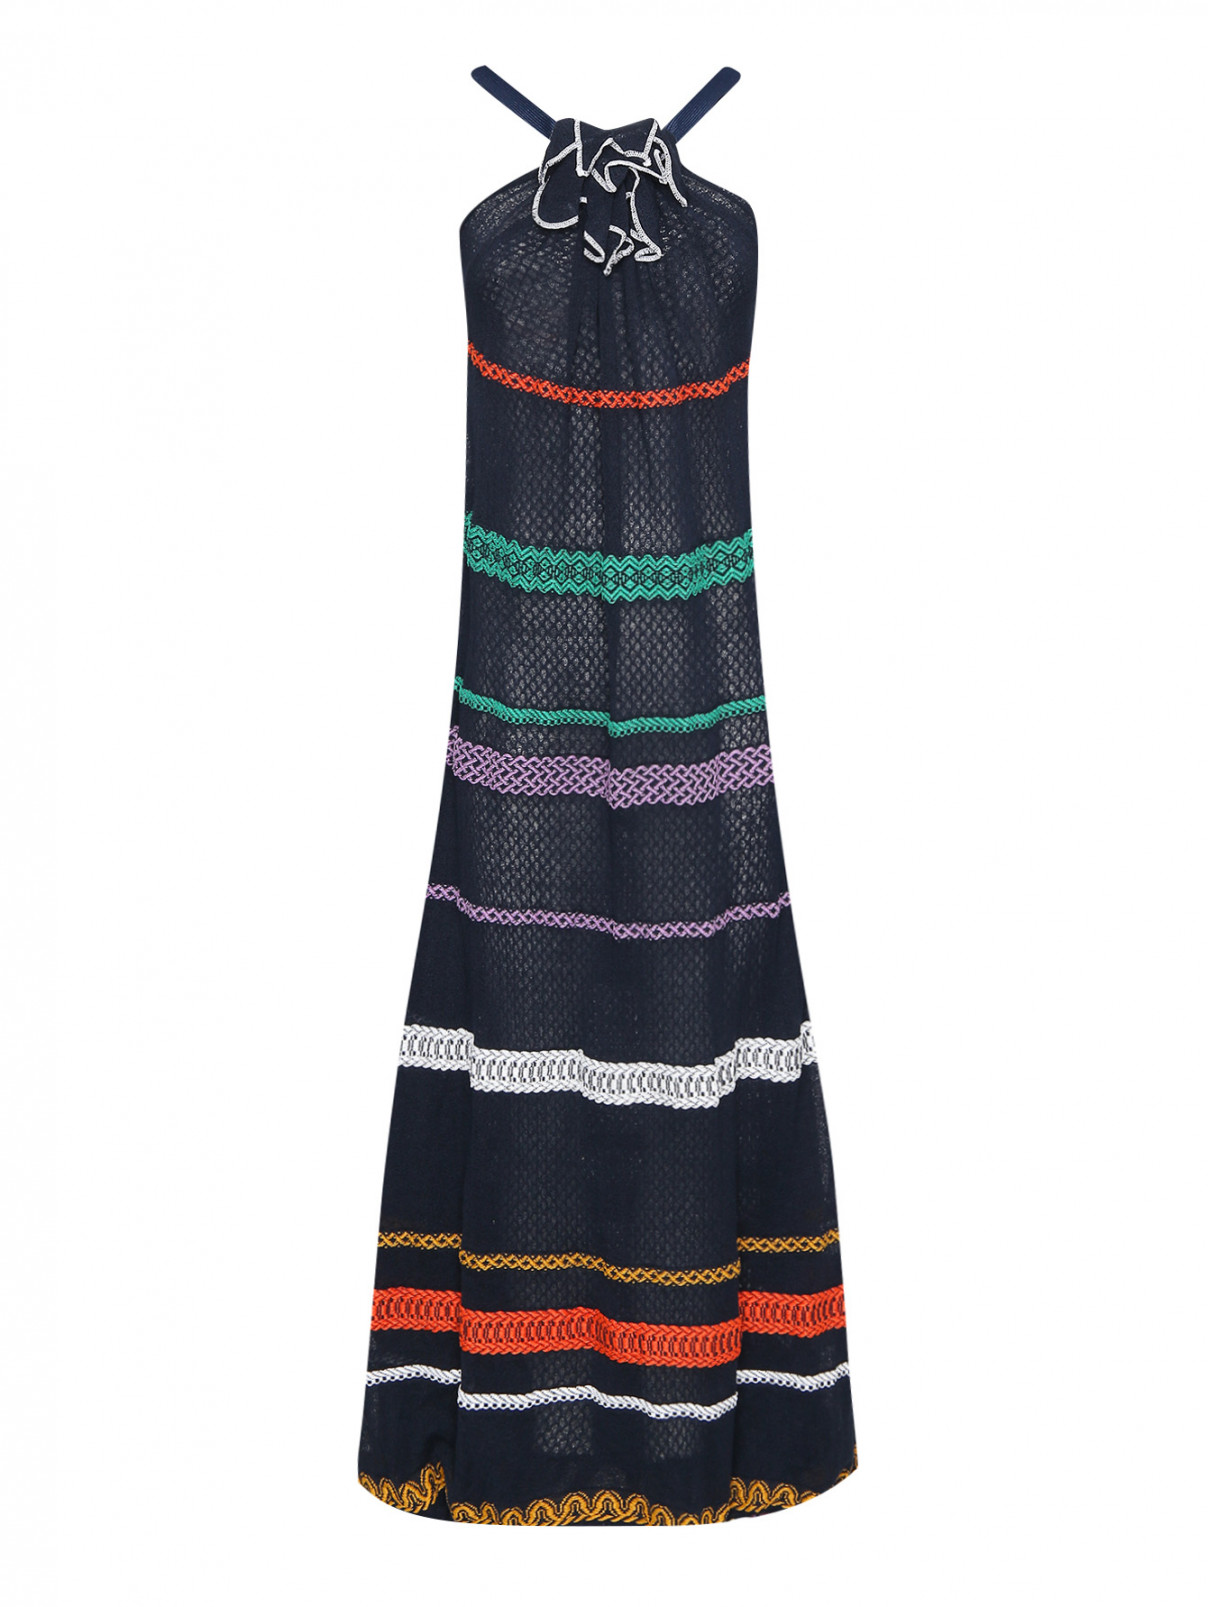 Платье-макси из хлопка и льна с вышивкой Sonia Rykiel  –  Общий вид  – Цвет:  Синий